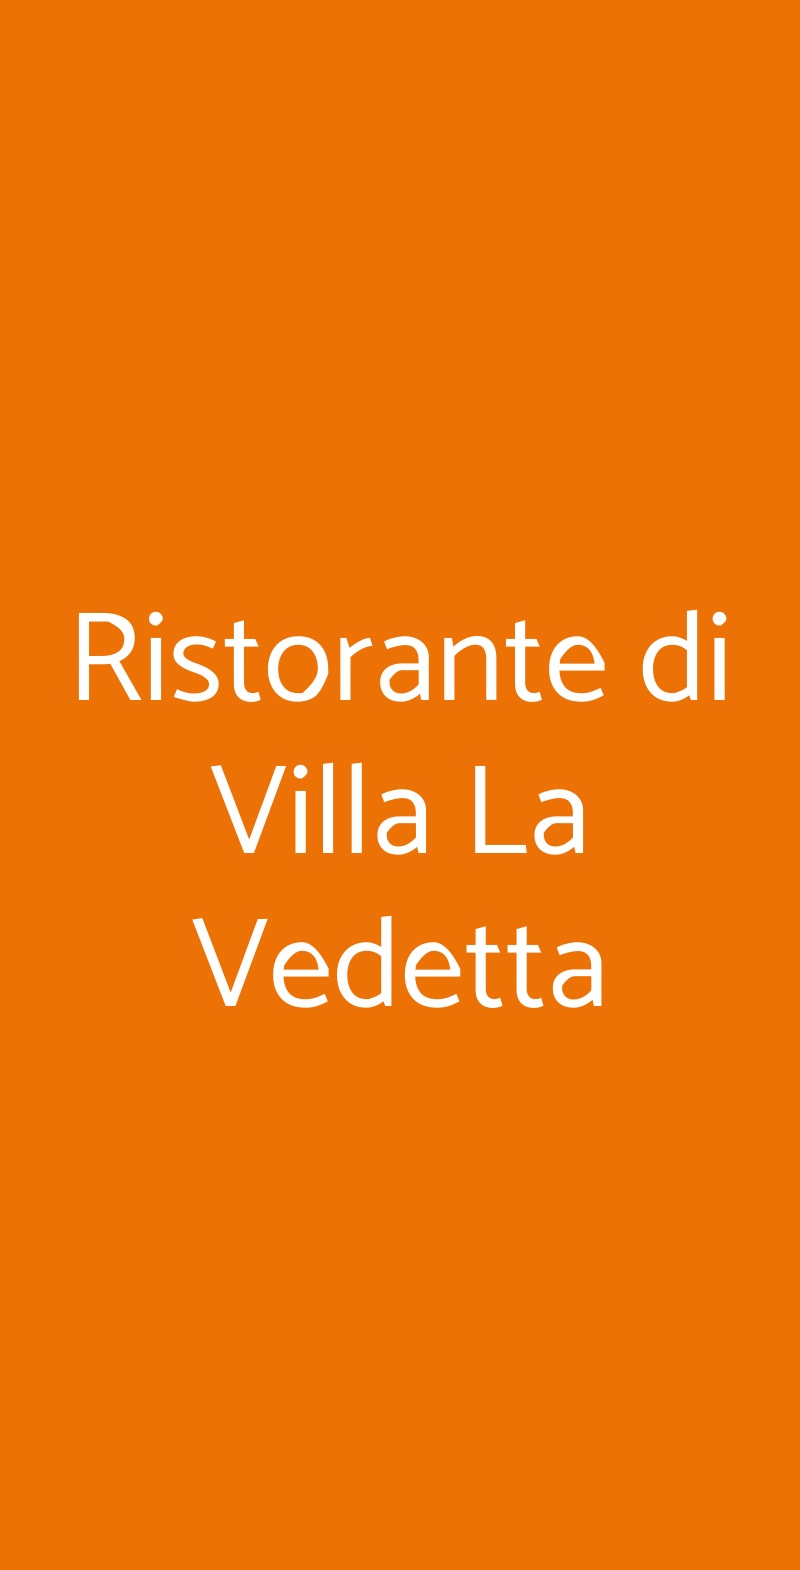 Ristorante di Villa La Vedetta Firenze menù 1 pagina